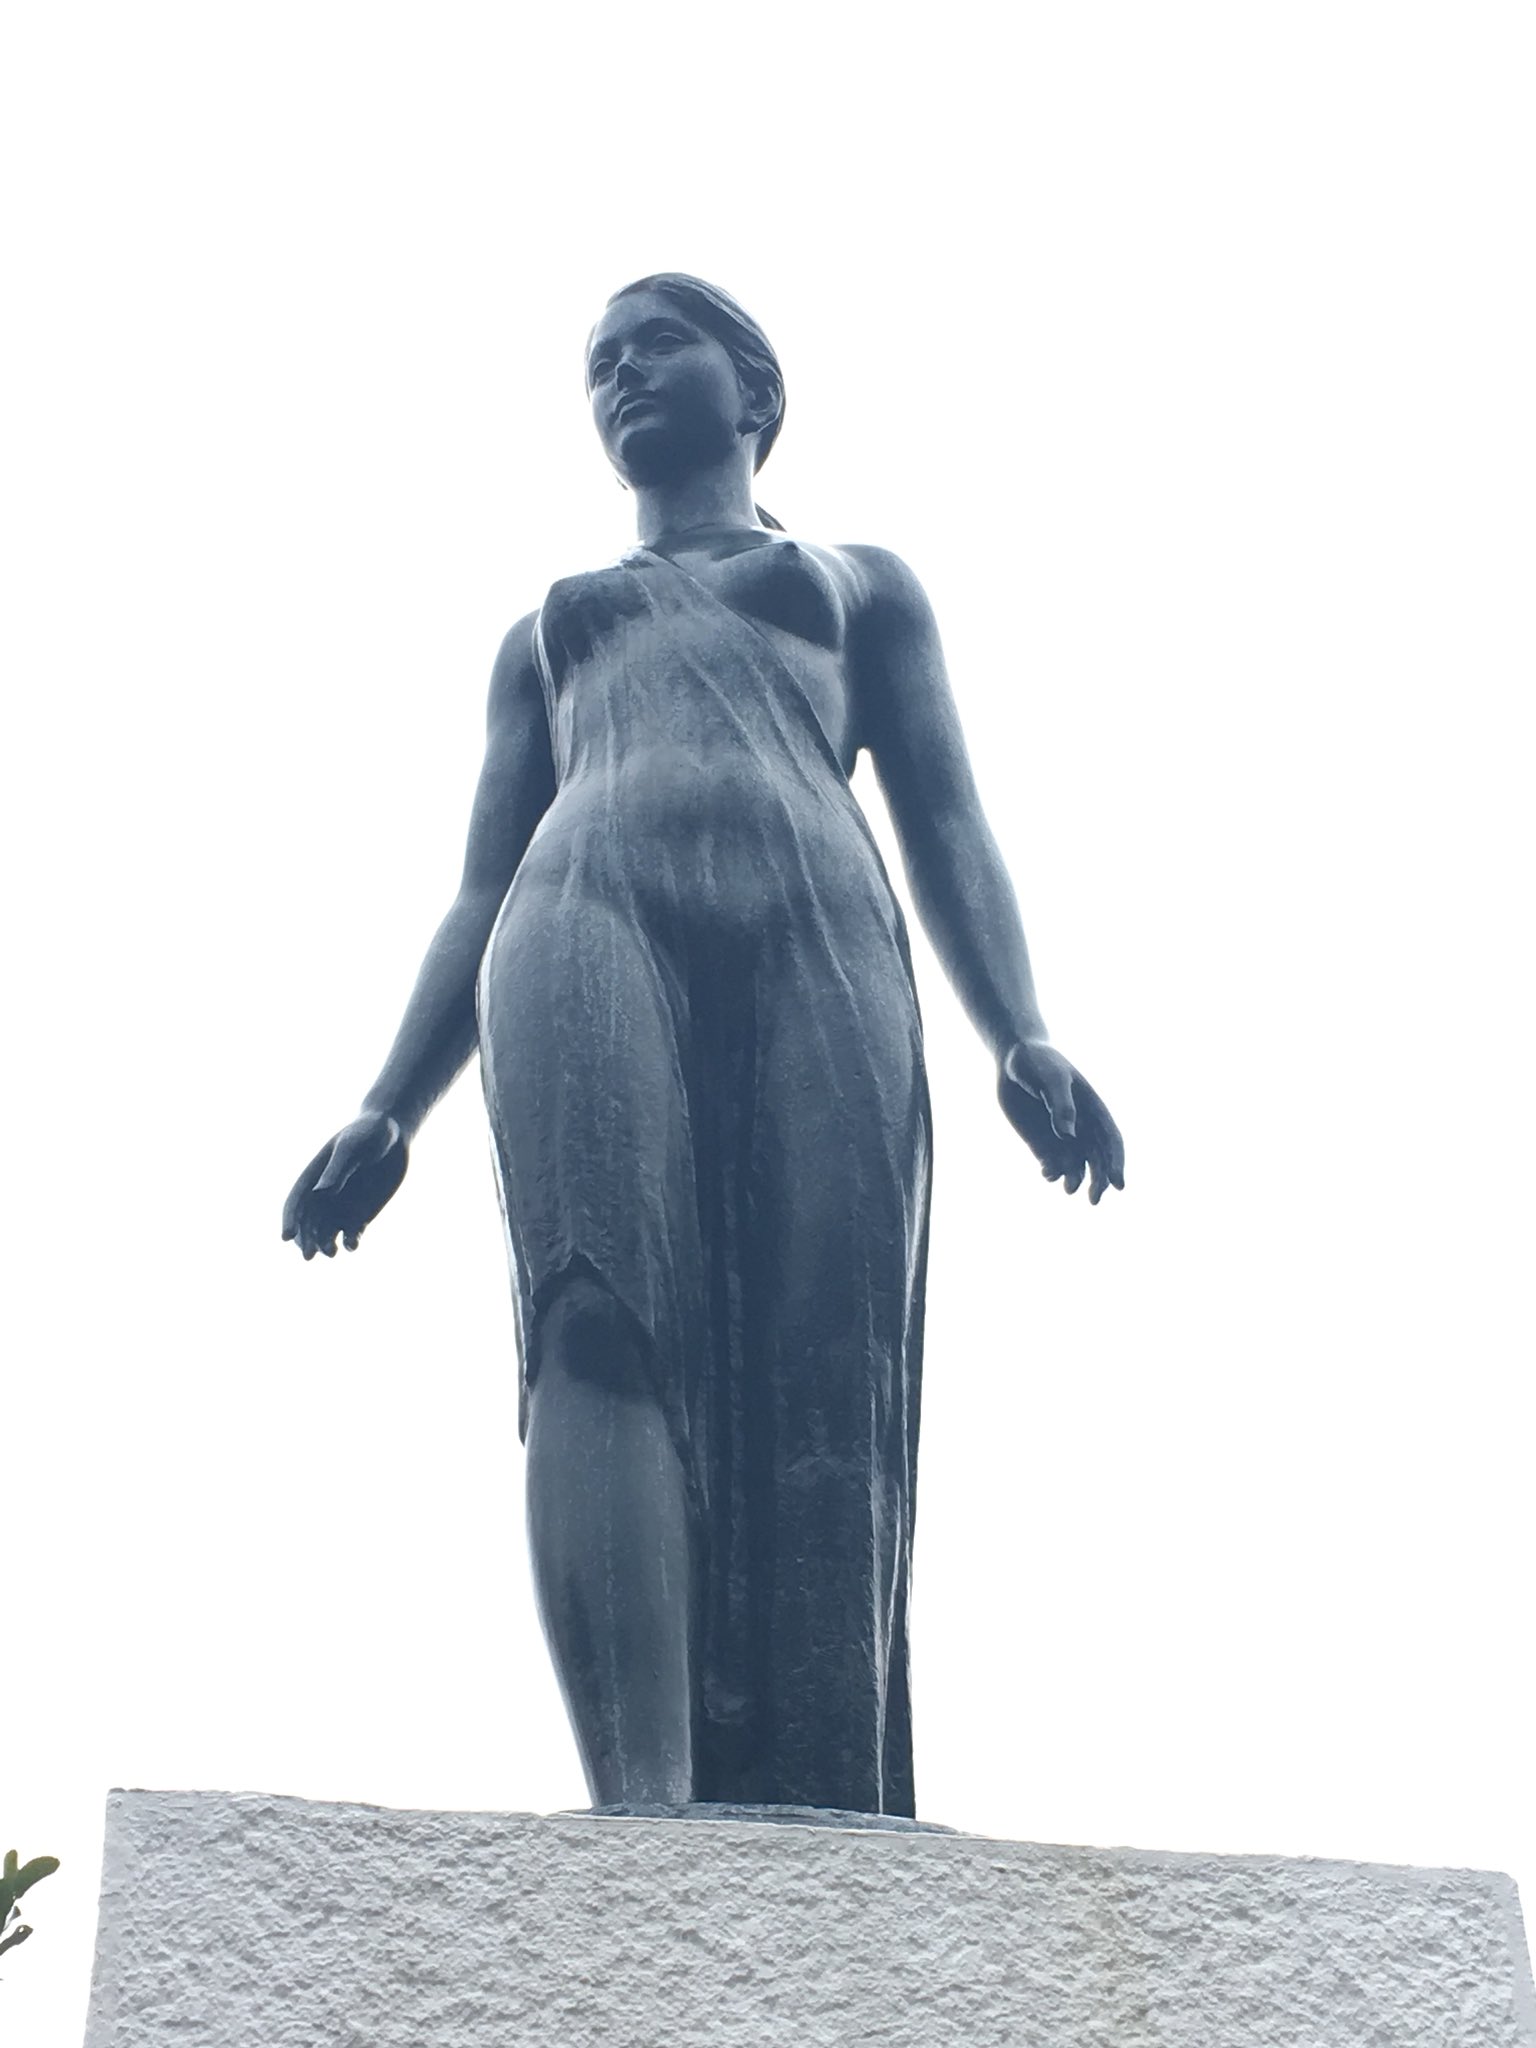 mineko/マキ姐 on Twitter "彫刻の森美術館続き 舟越保武氏の女性像は量感がよくわかる。ゴッホは後ろから見るとちゃんと帽子